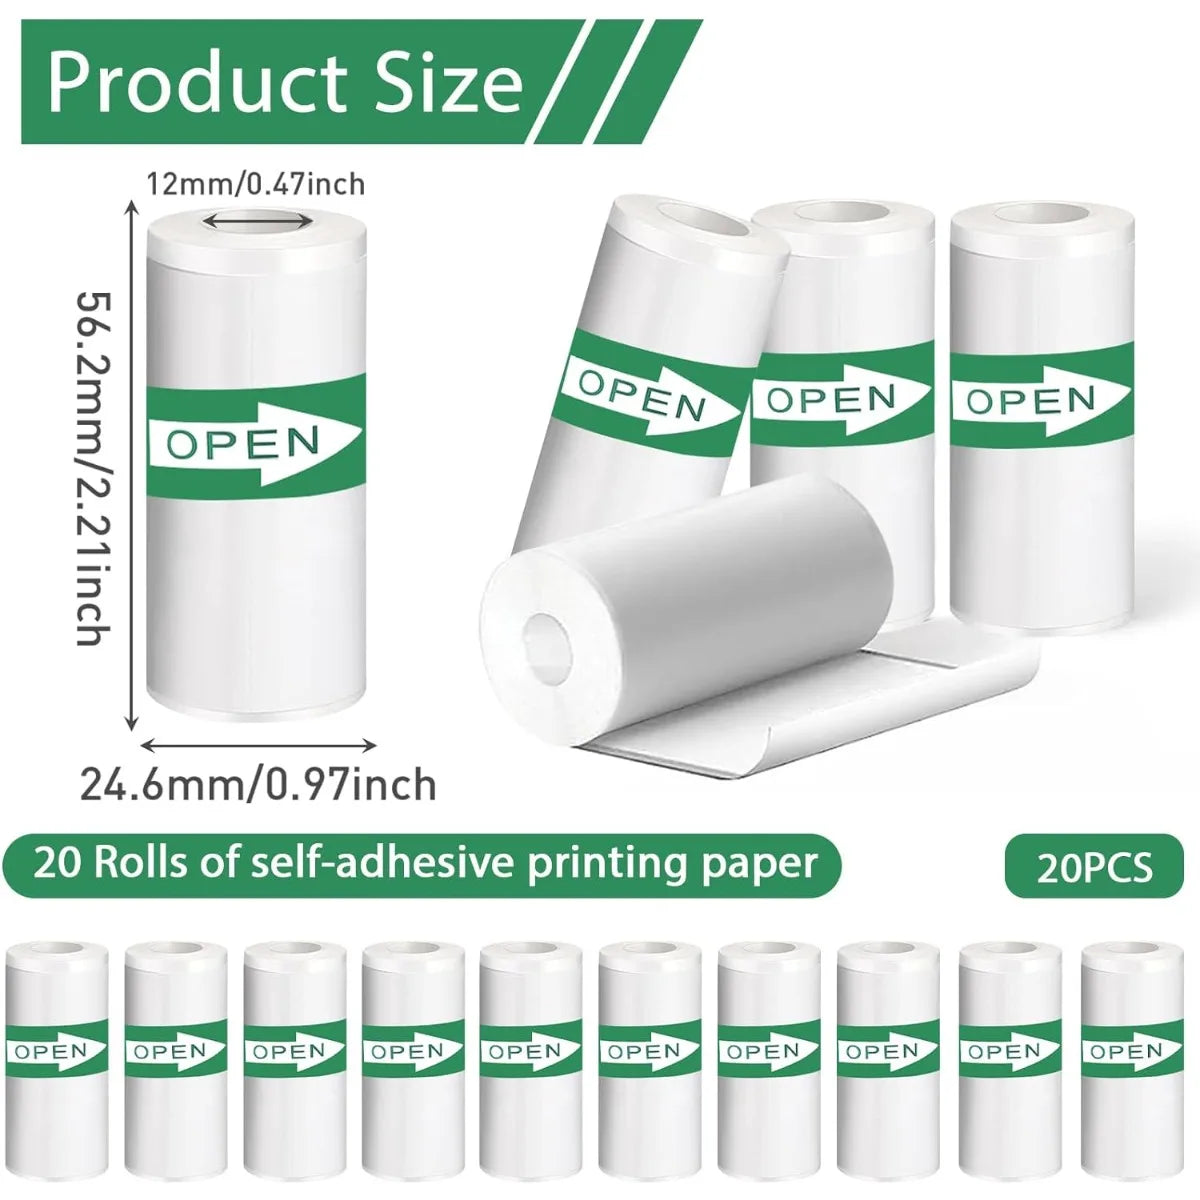 20 Stück selbstklebendes Thermo-Aufkleberpapier für Mini-Fotodrucker, 5,7 x 2,5 cm